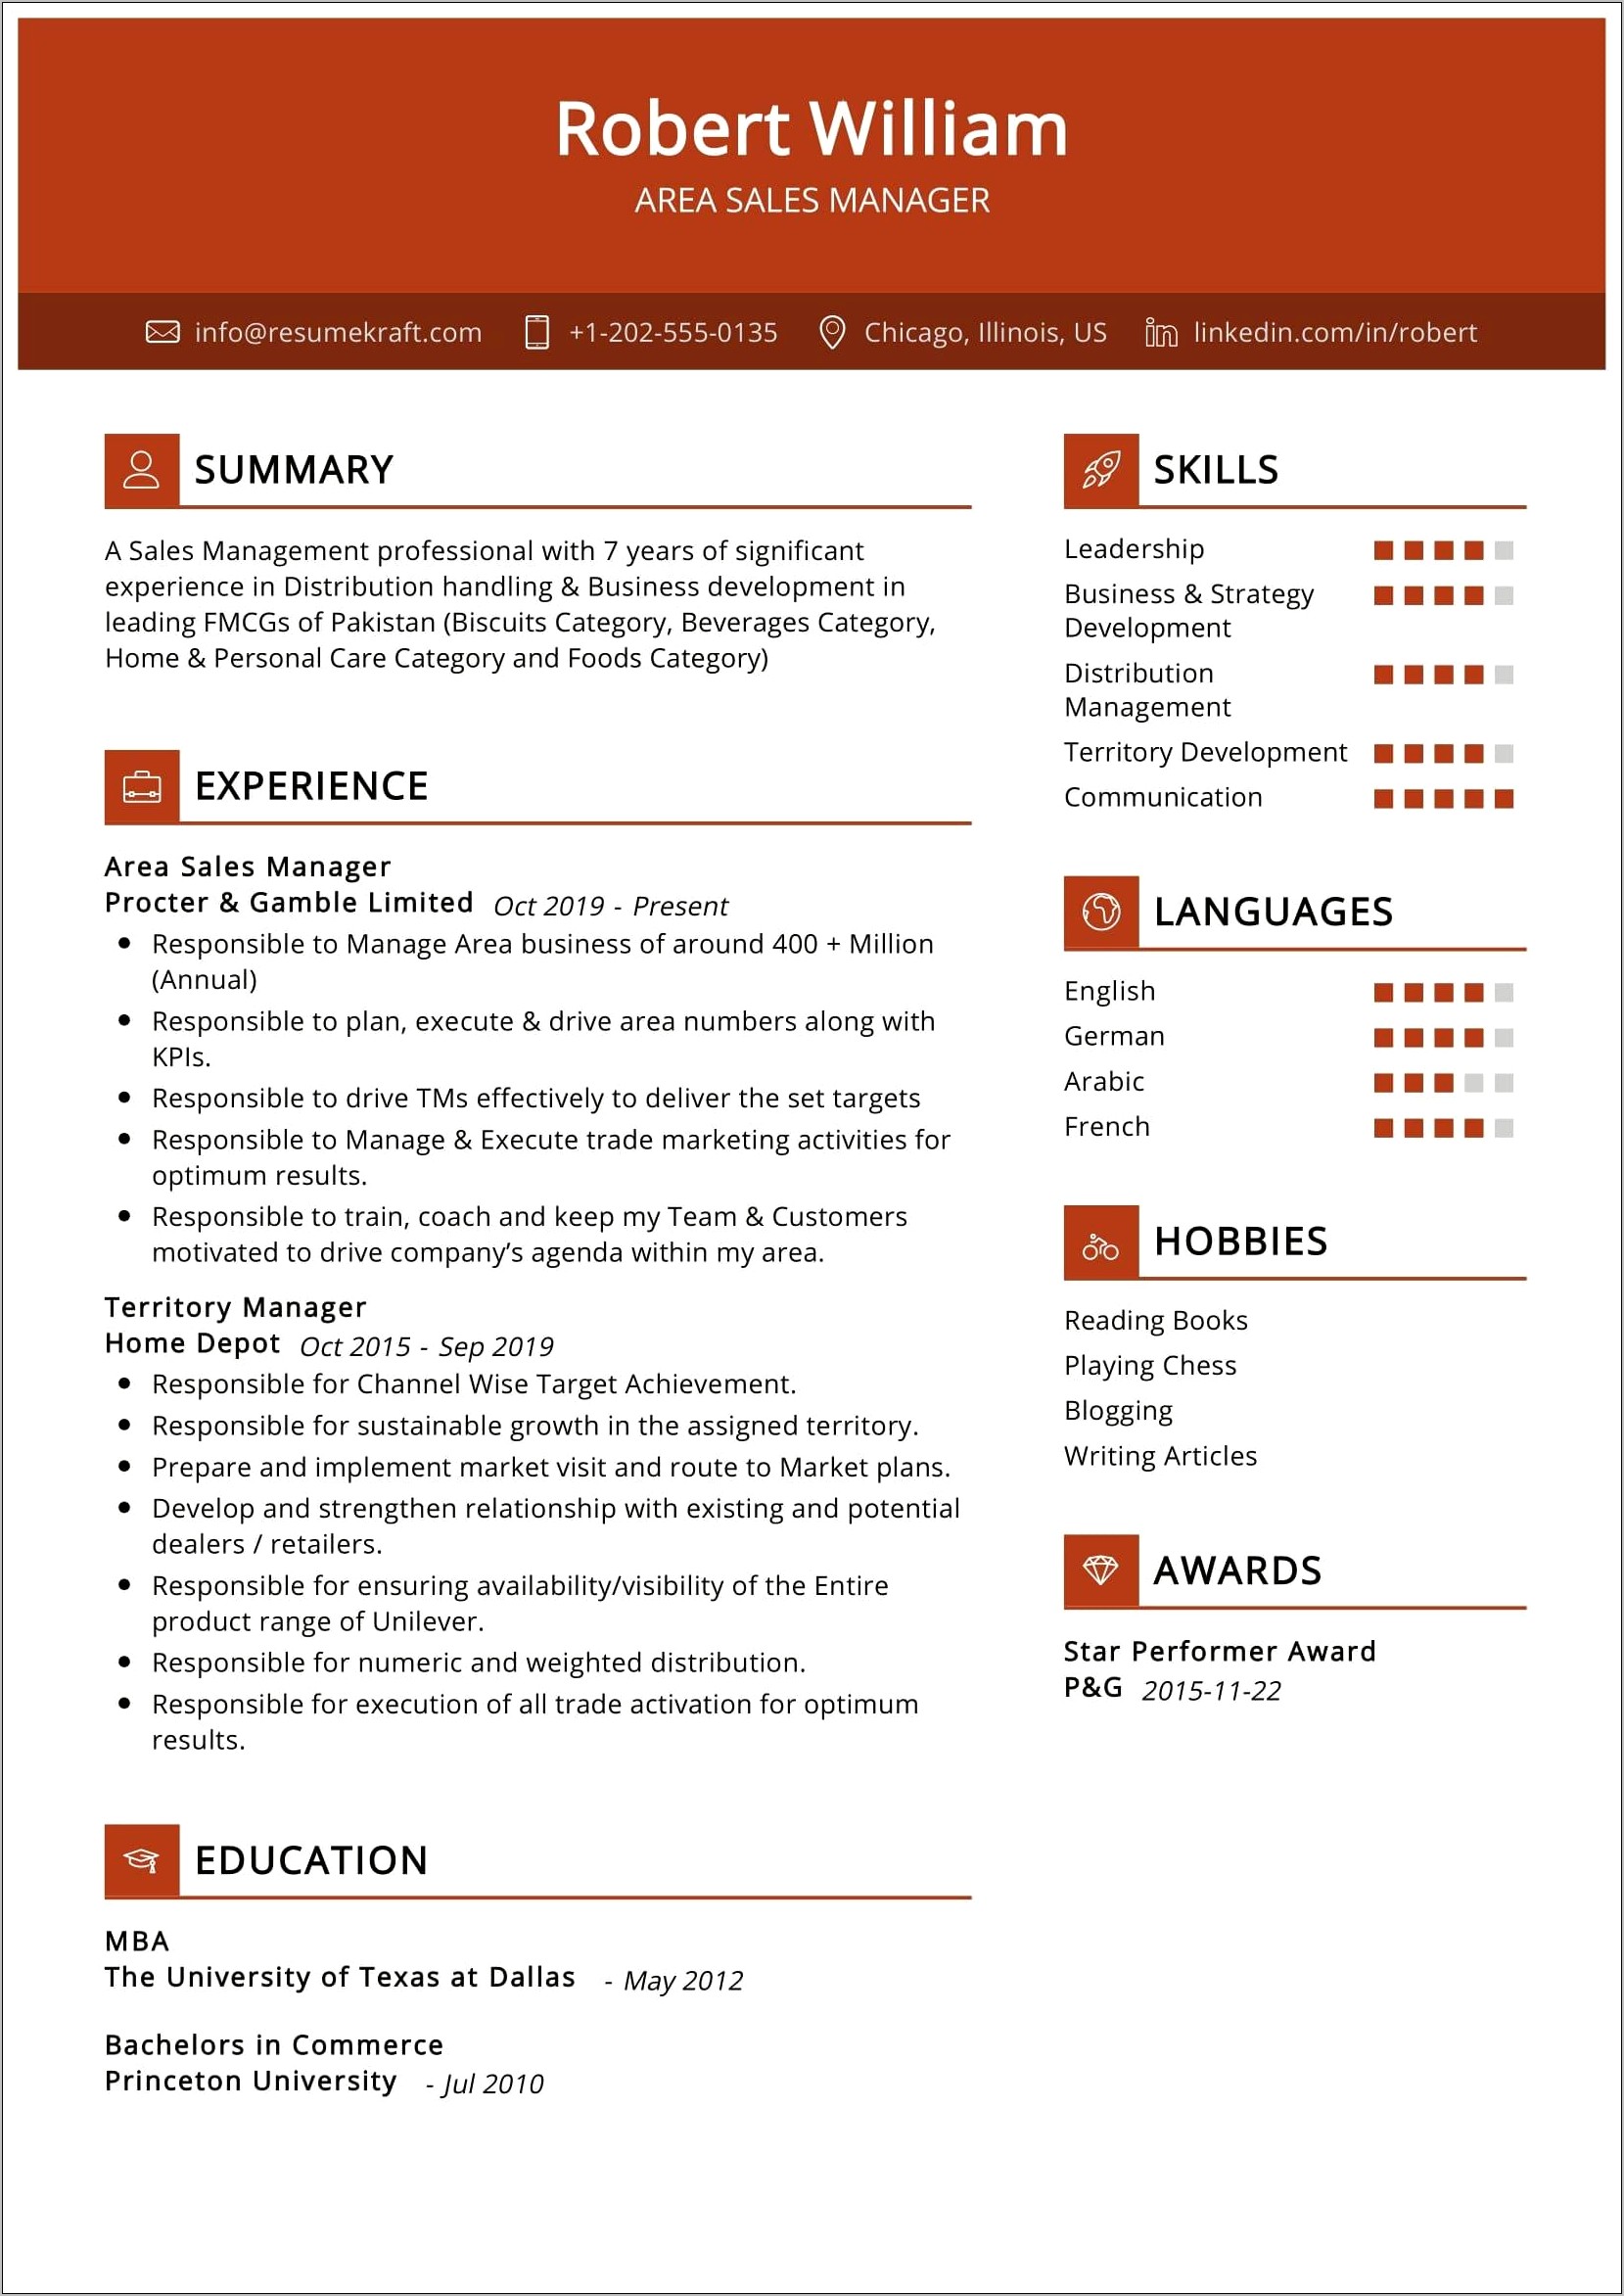 Retail Sales Manager Job Description Resume